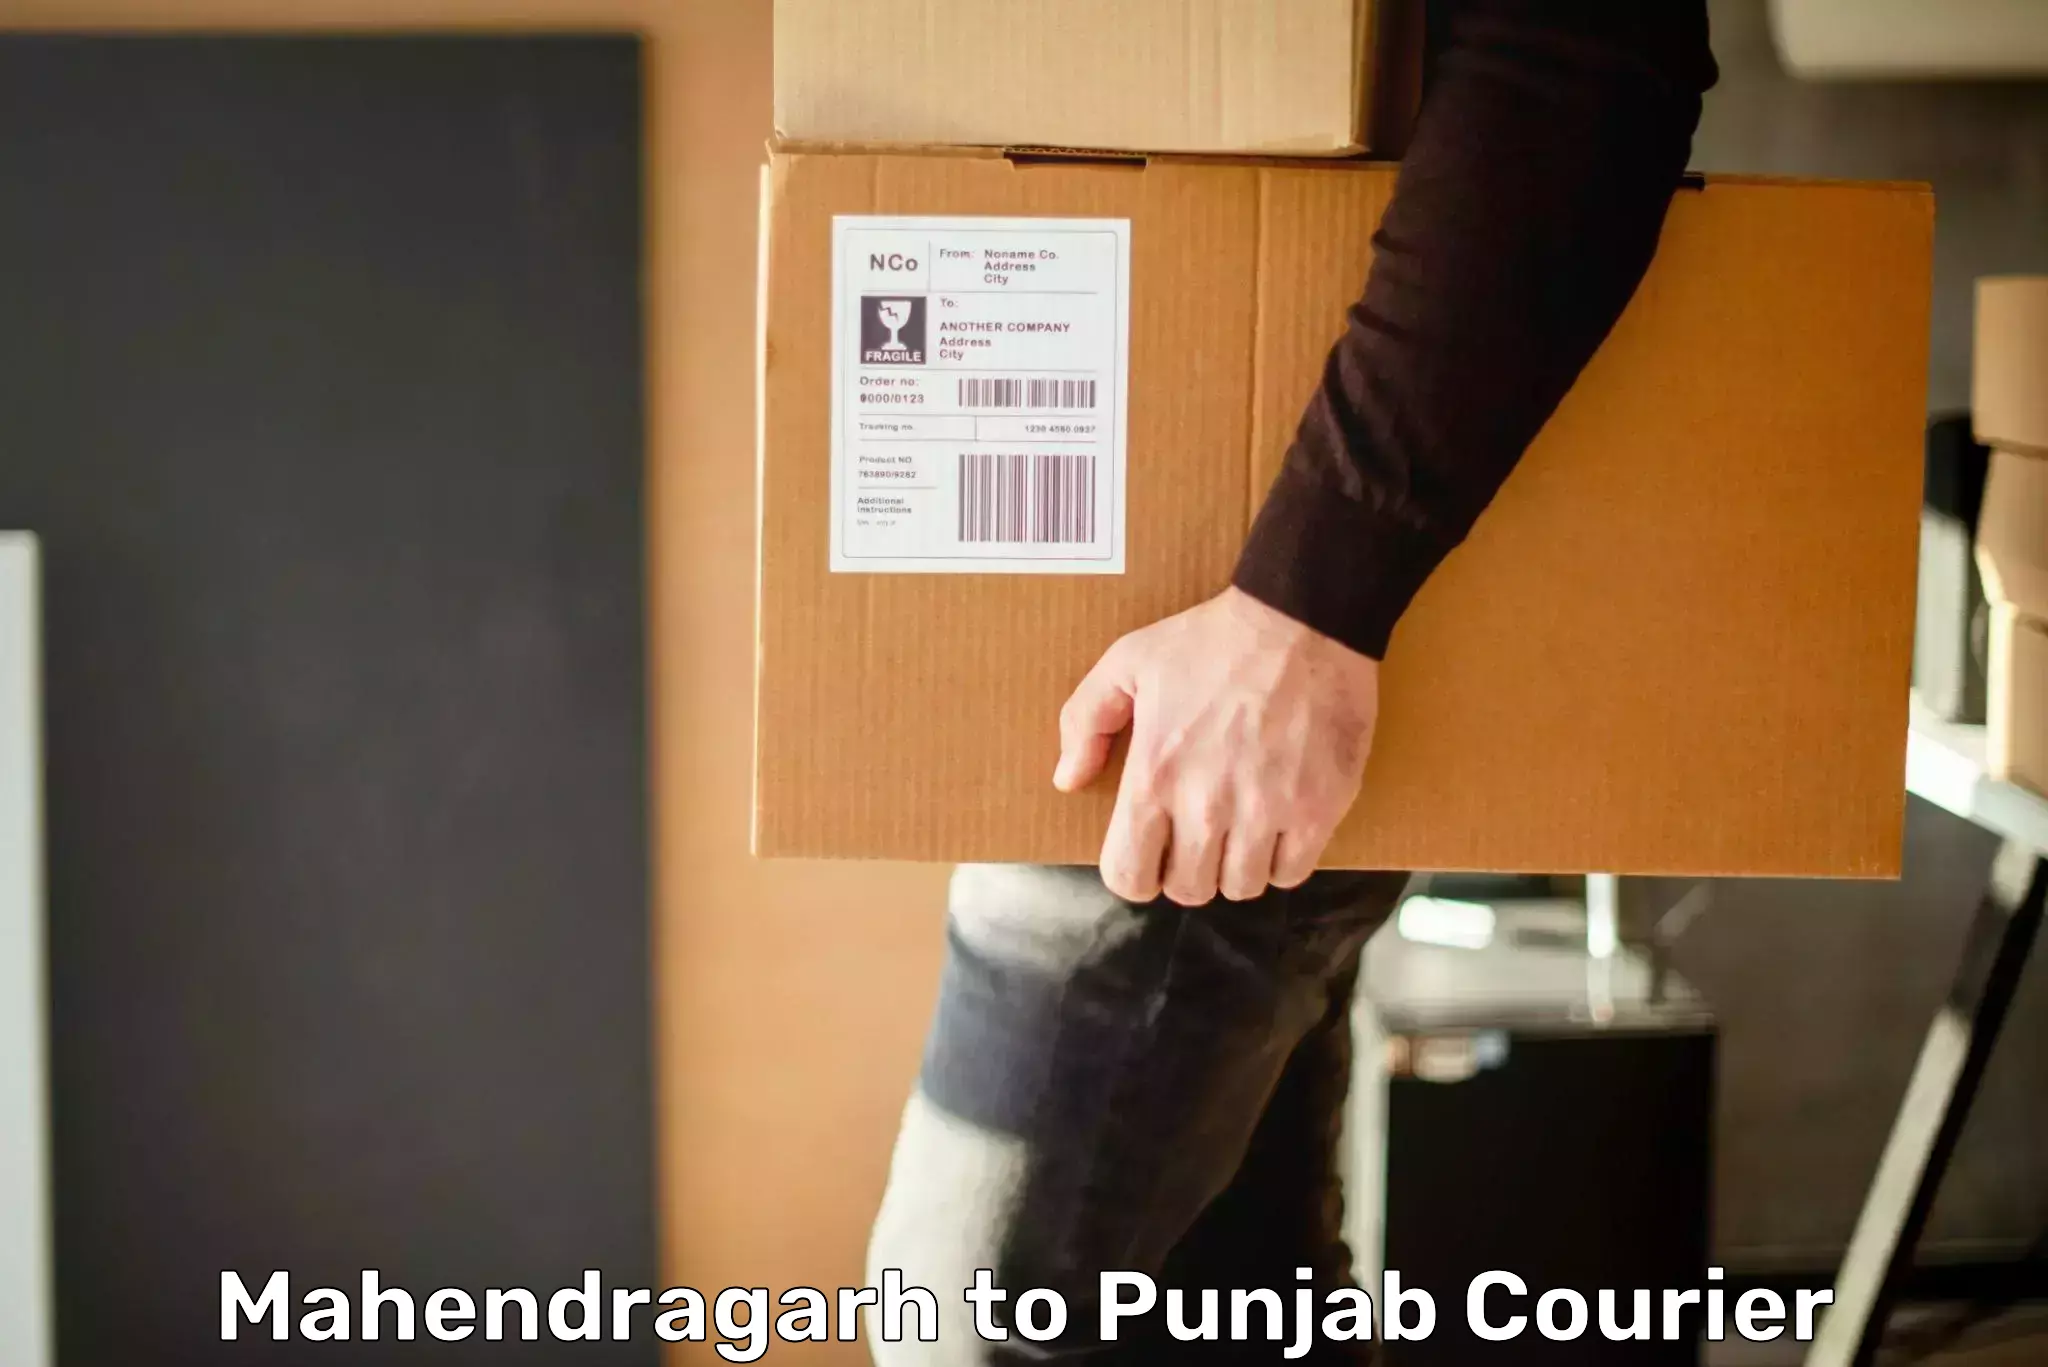 Customized shipping options Mahendragarh to Mandi Gobindgarh